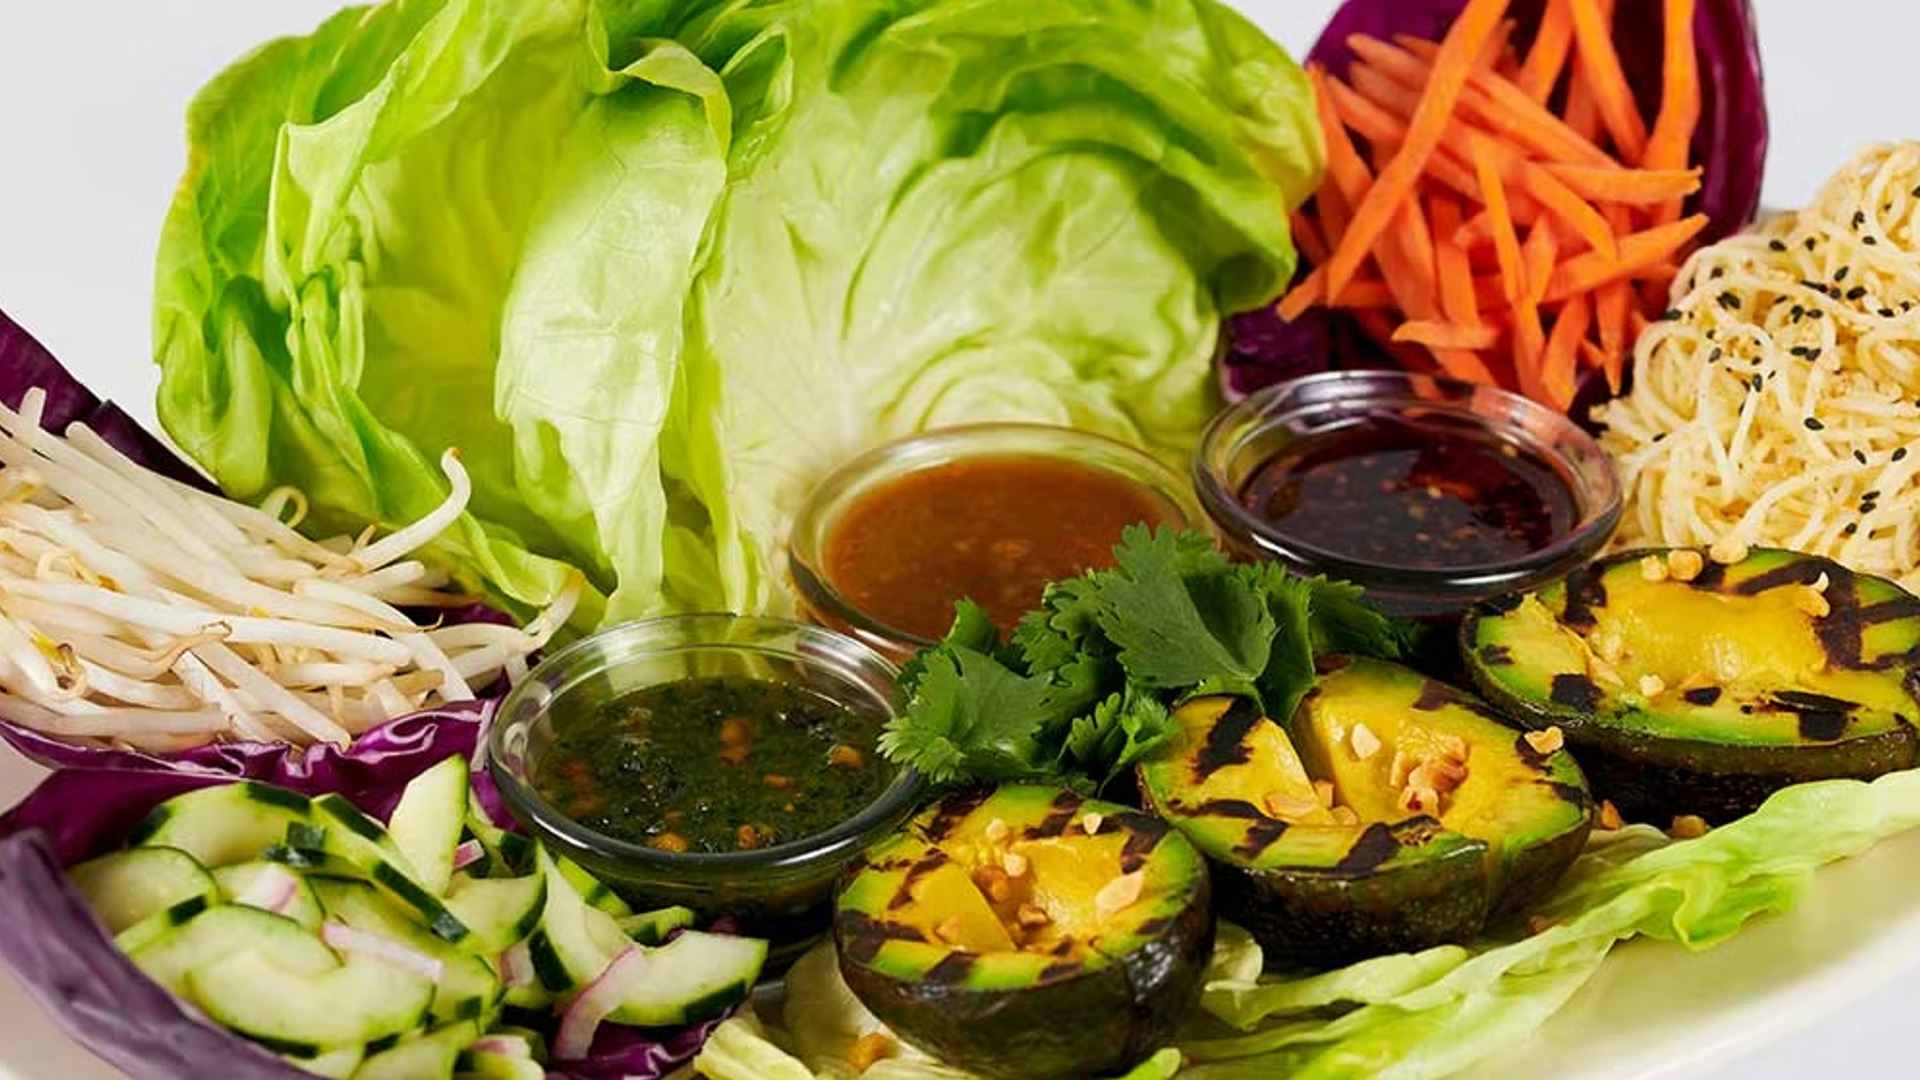 Thai Lettuce Wraps